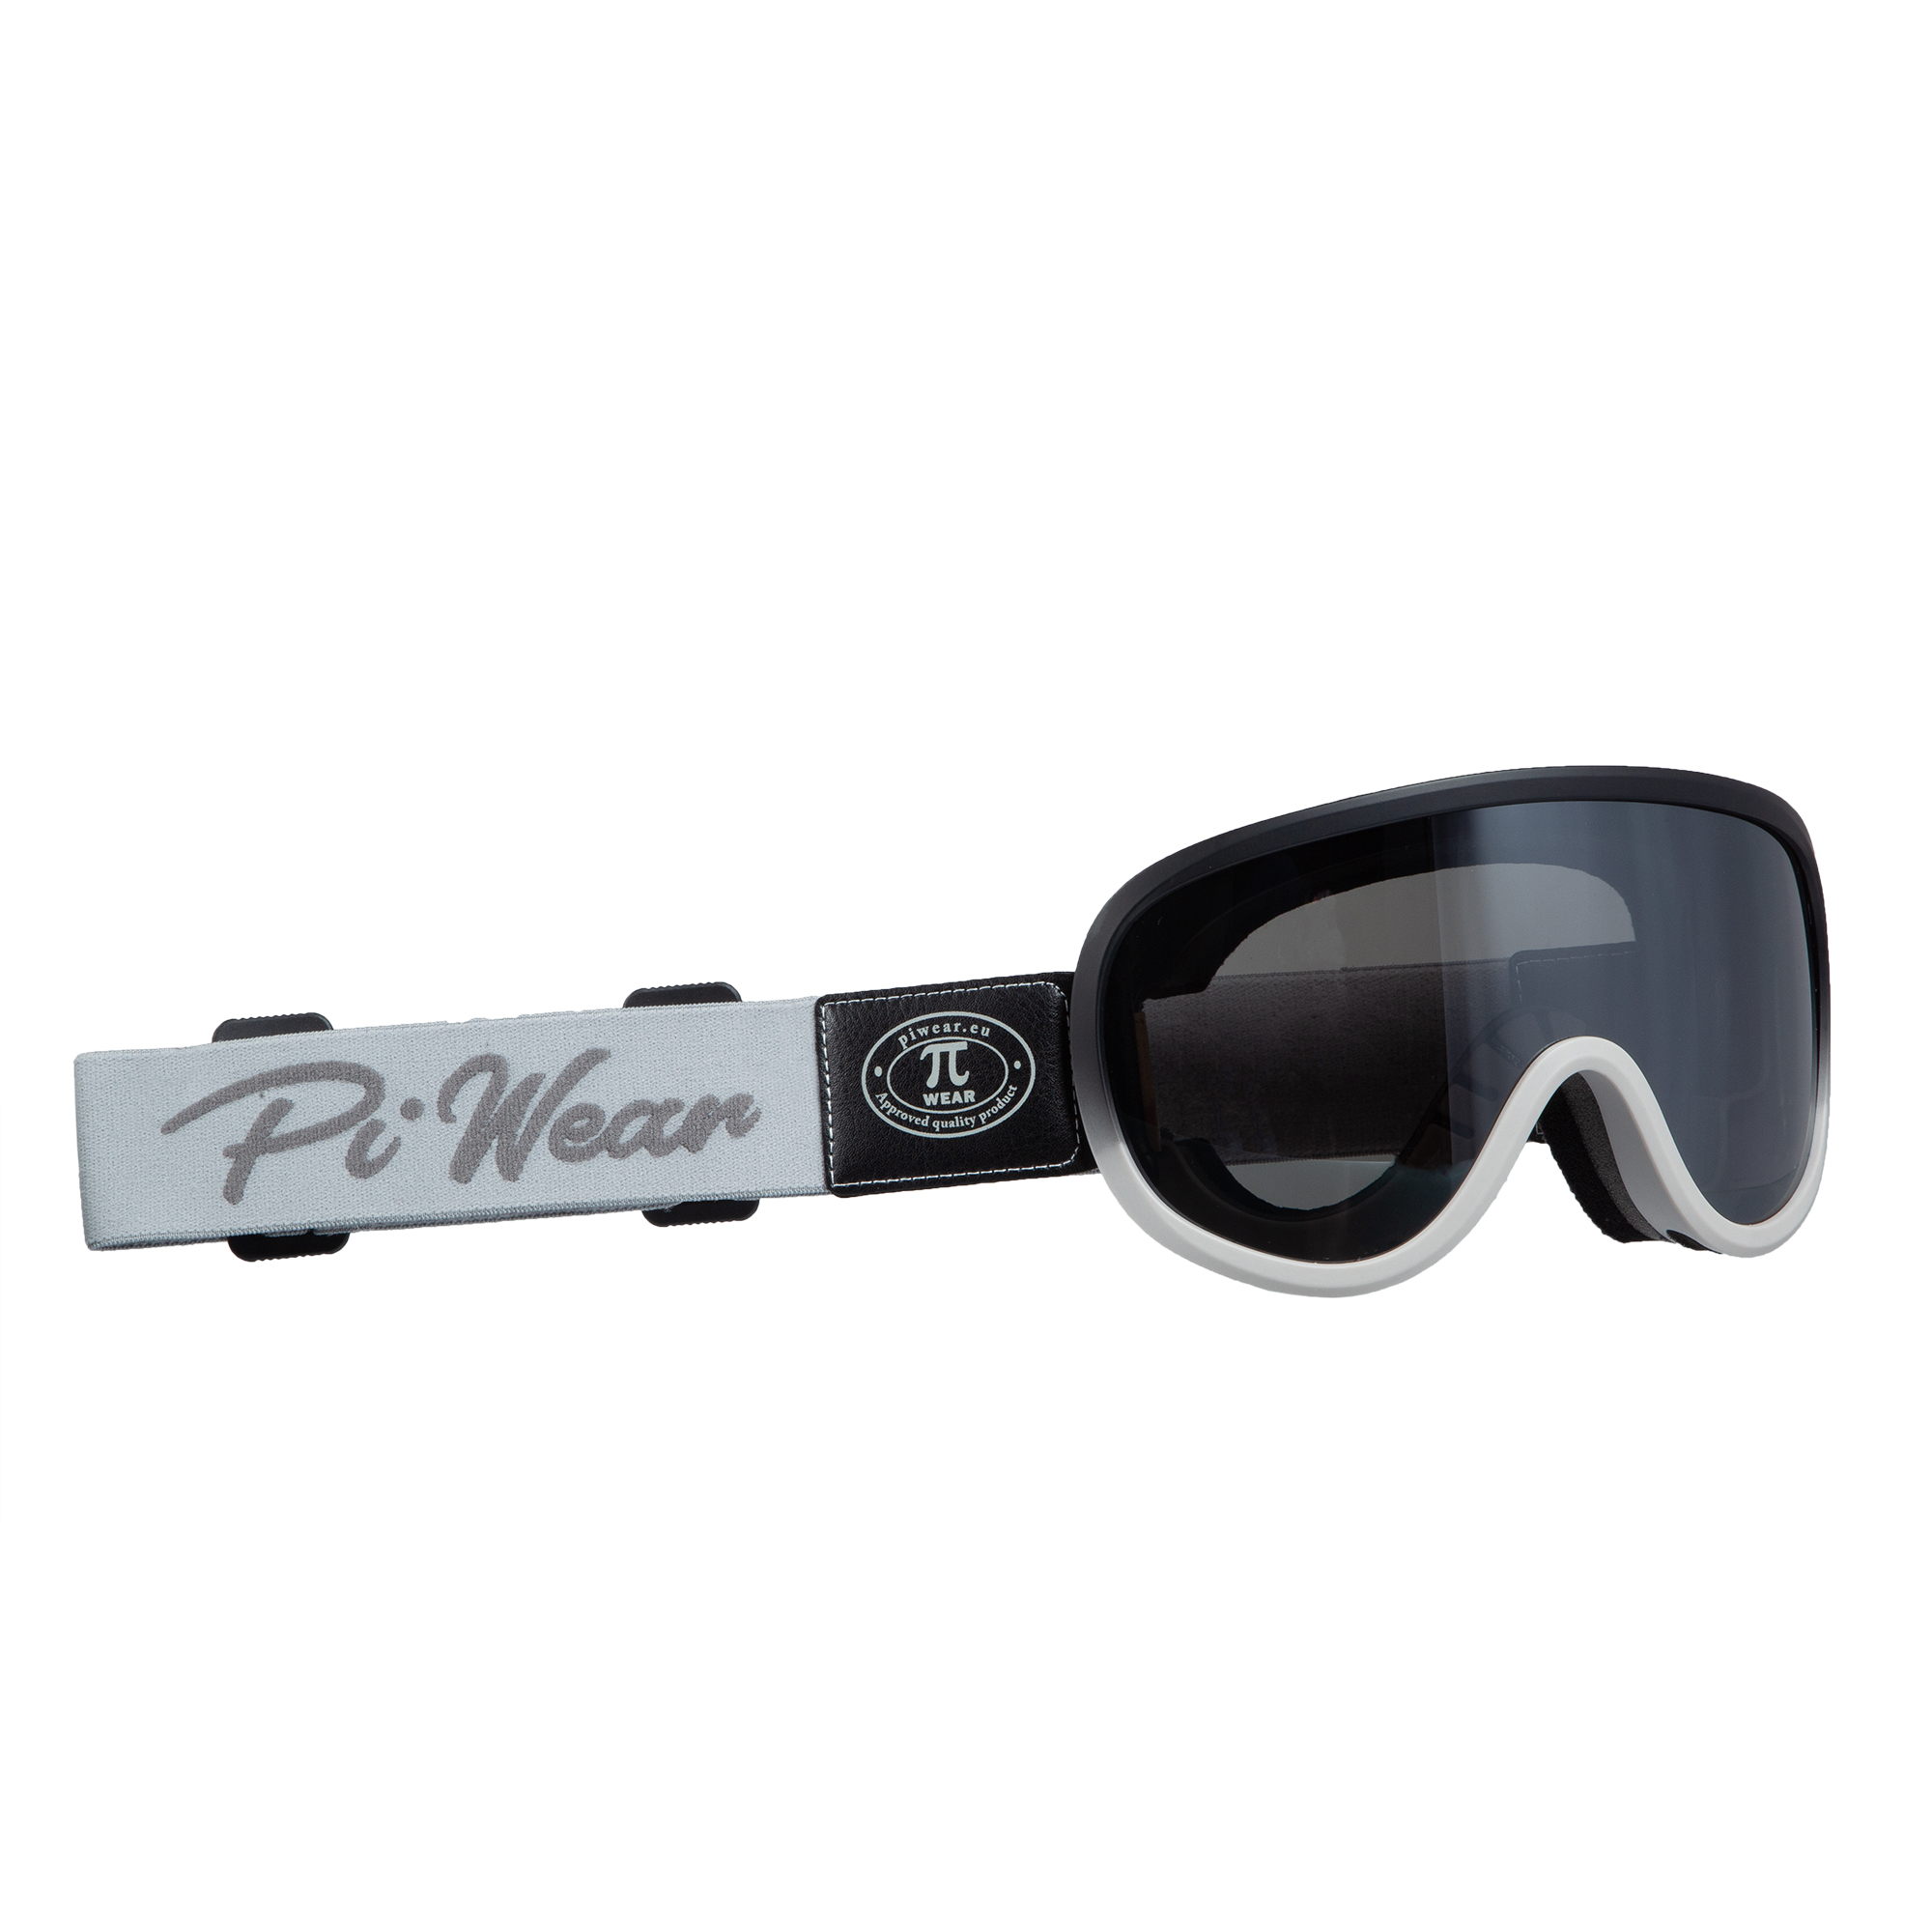 Pi-Wear Toronto dunkel getönte Winddichte Sonnenbrille für Brillenträger mit Polster 